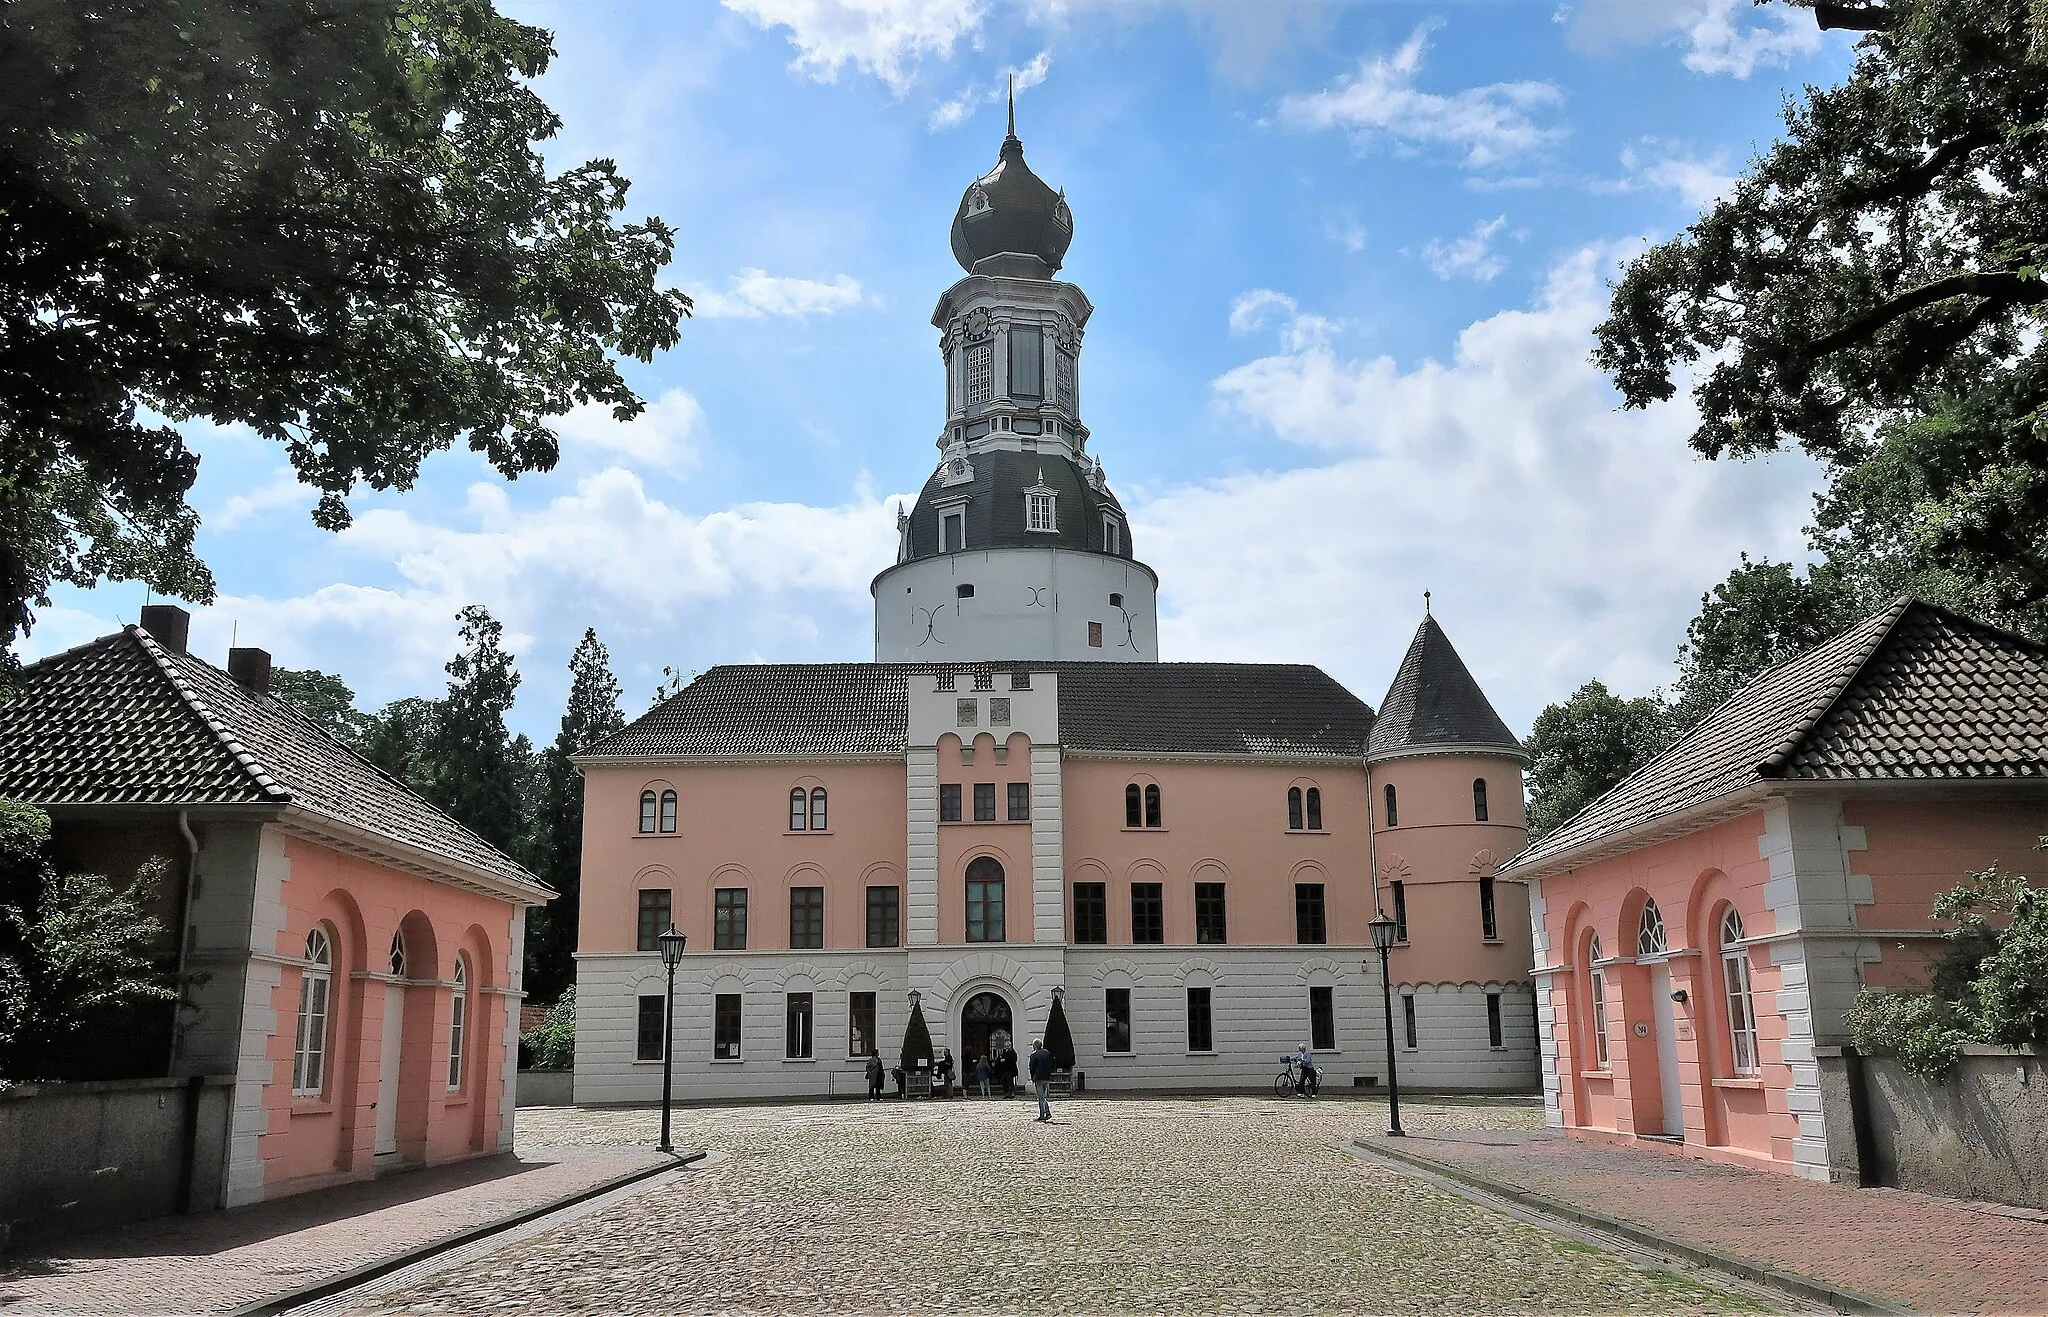 Photo showing: Blick auf Schloss Jever. Umgeben von einem idyllischen englischen Garten zählt Schloss Jever zu den schönsten Baudenkmälern in Norddeutschland.